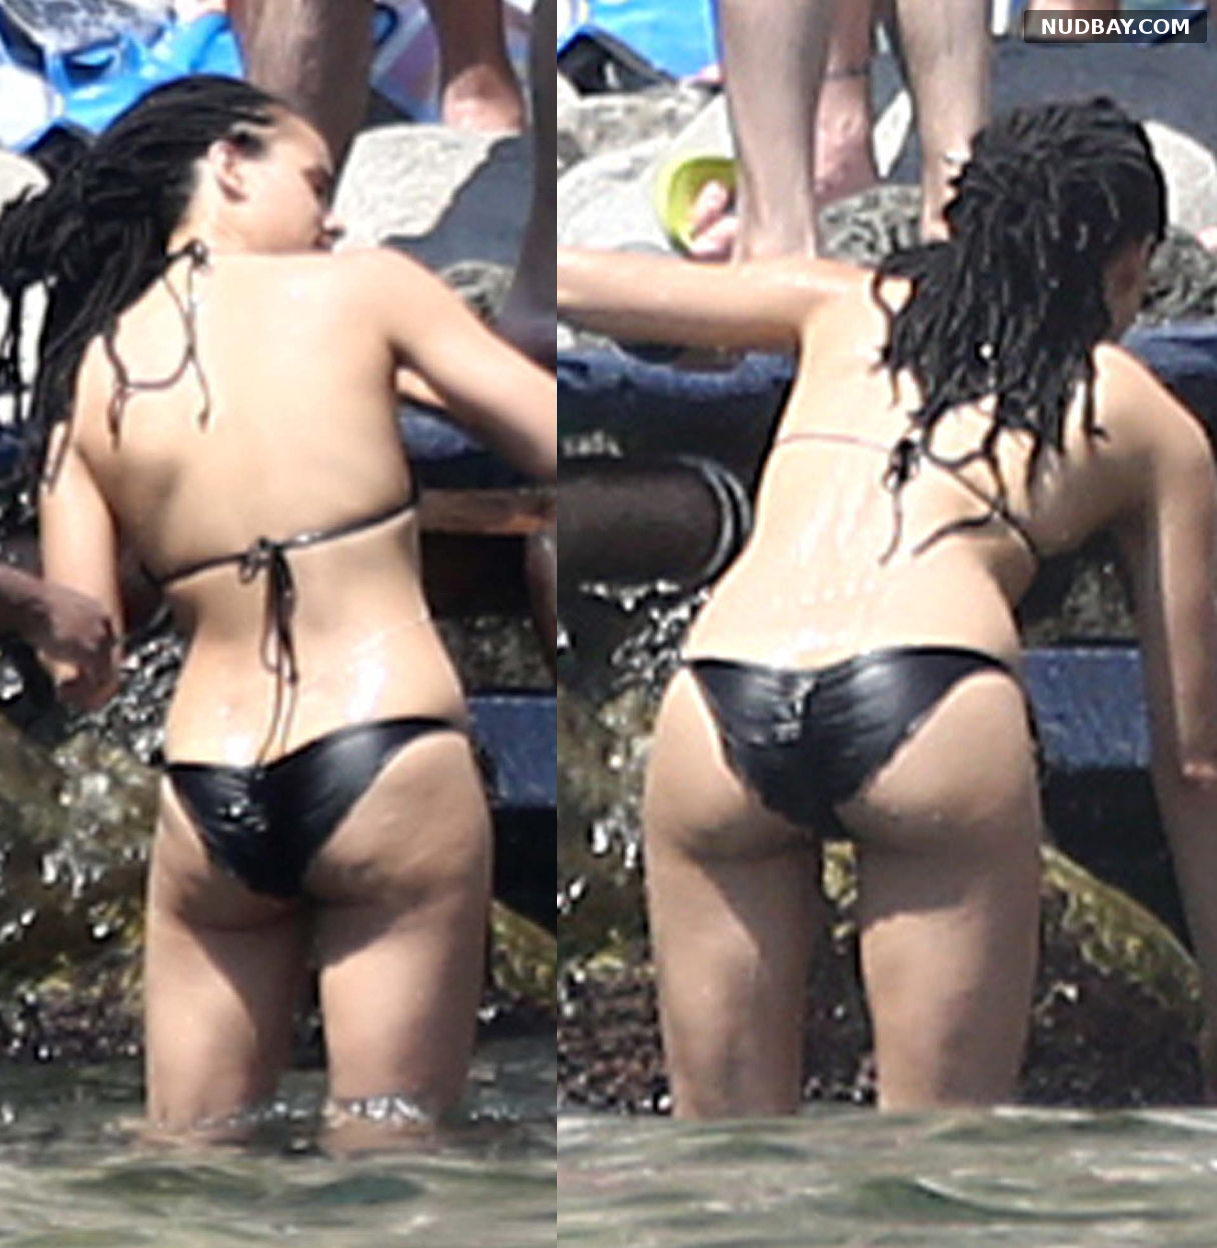 Nathalie Emmanuel nude ass in black bikini on a boat in Ischia Jul 15 2015